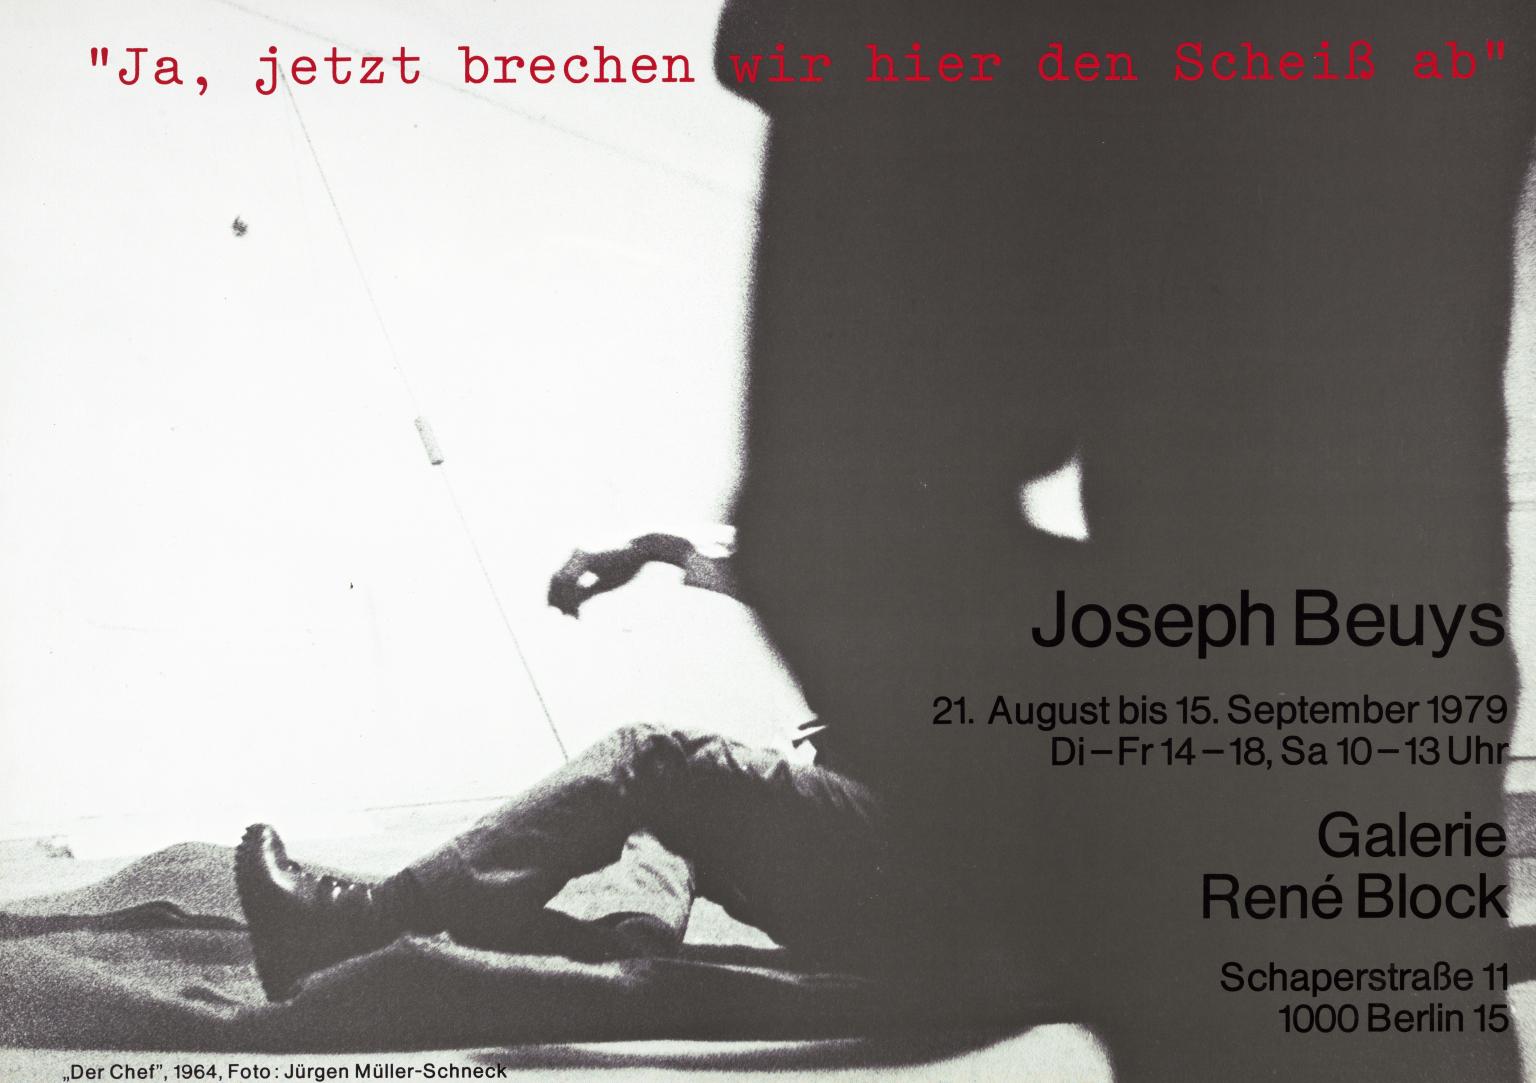 Joseph Beuys: ‘Ja, jetzt brechen wir hier den Scheiß ab’. Galerie René Block, Berlin. 1979